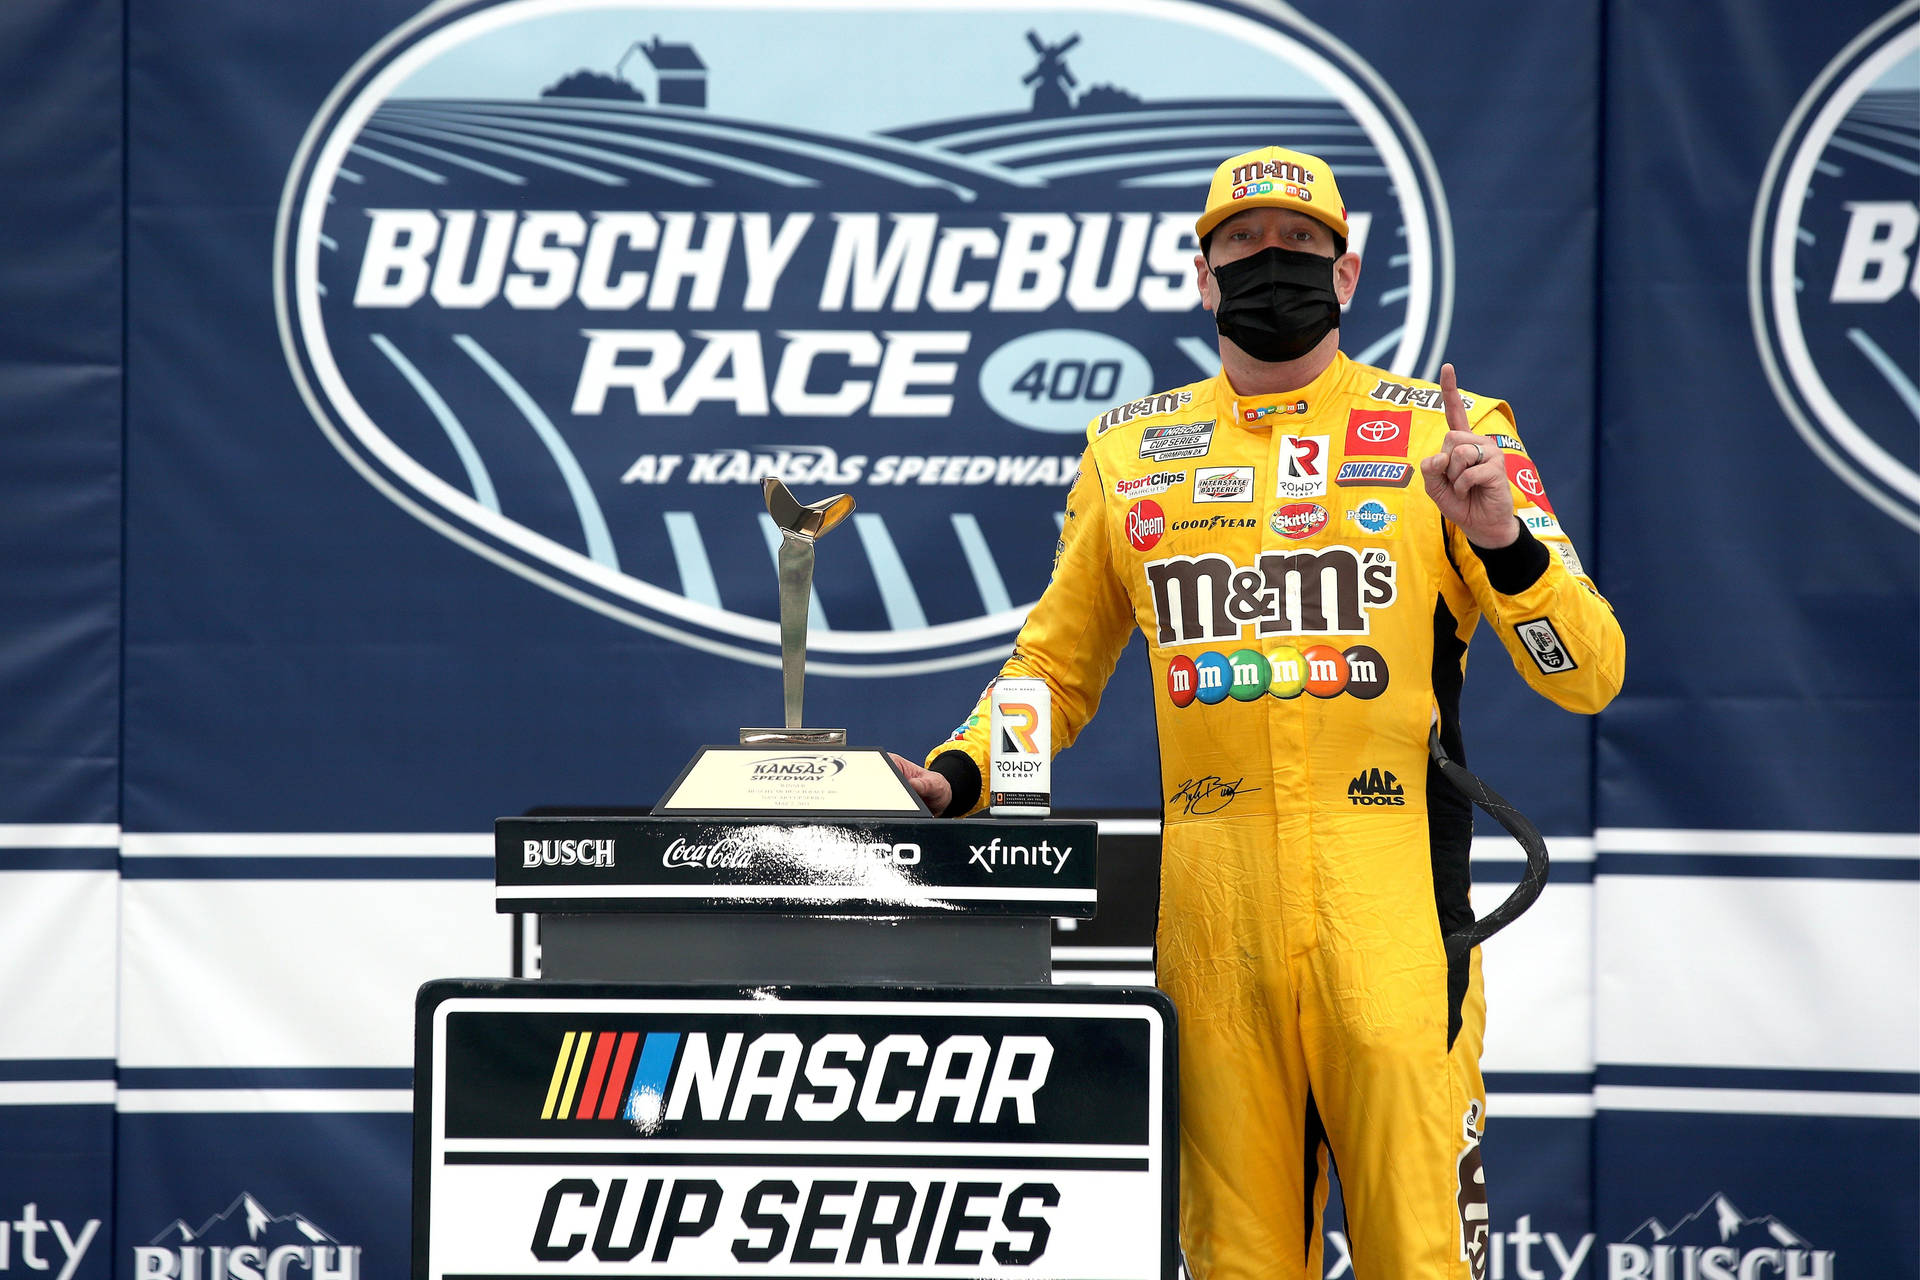 NASCAR-mesteren Kyle Busch leverer et fantastisk adrenalinpumpende tema til denne tapet. Wallpaper